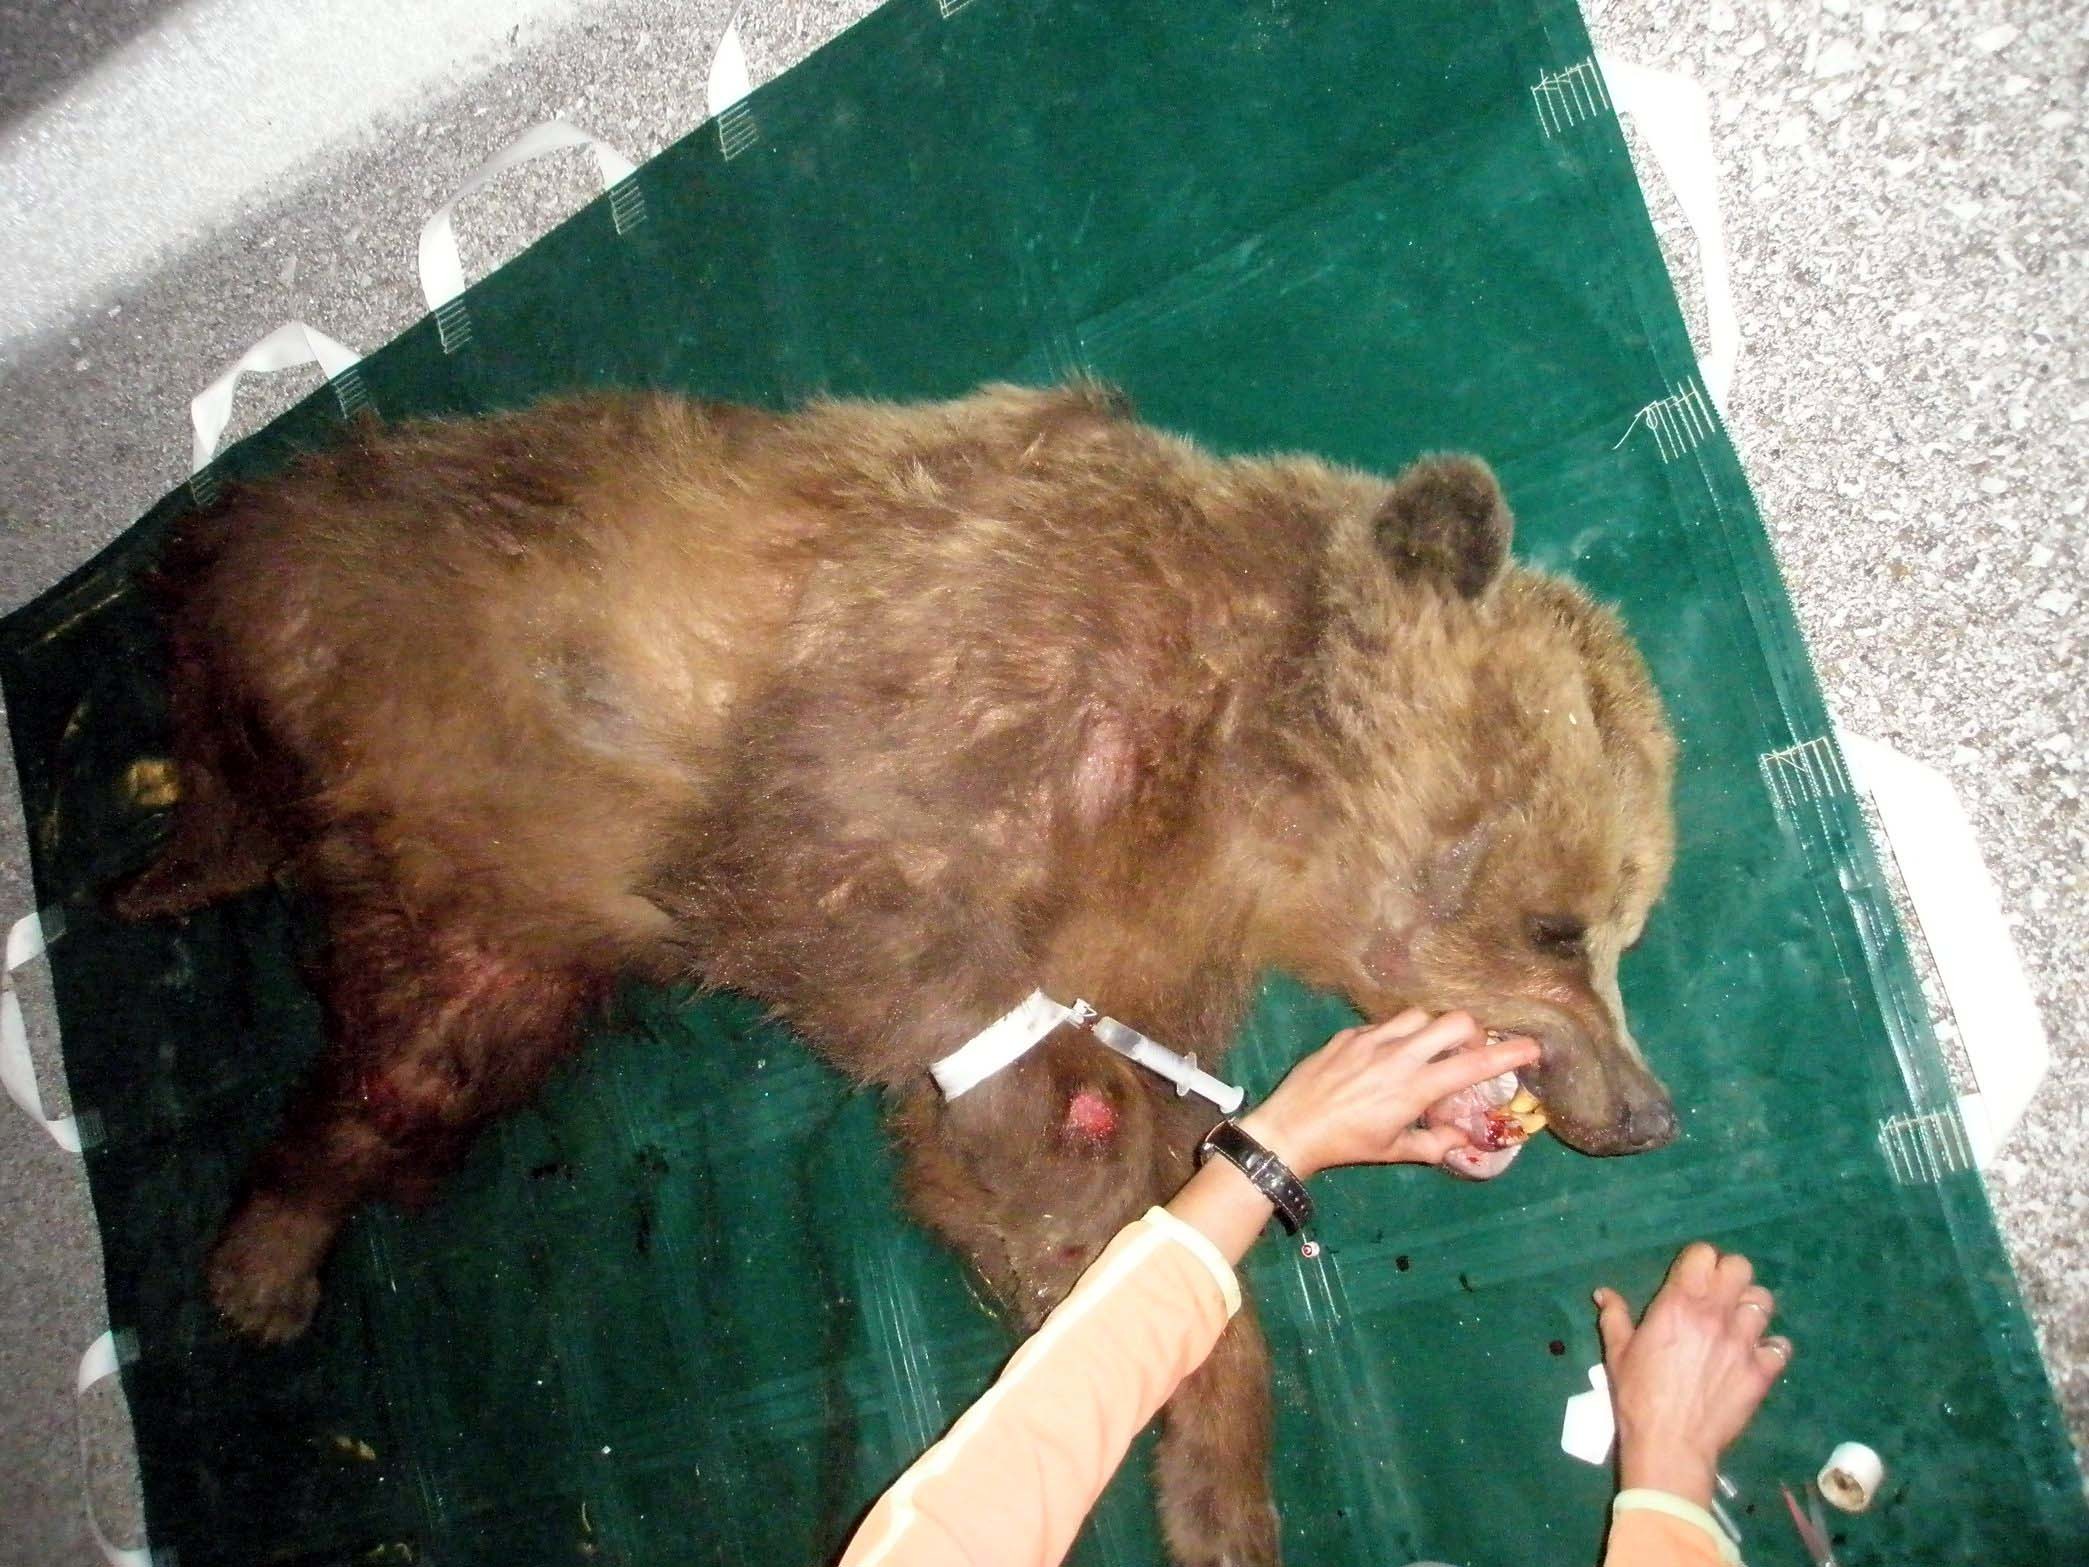 Μακεδονία: ”Λύγισε” η αρκούδα που χαροπάλευε για 48 ώρες!